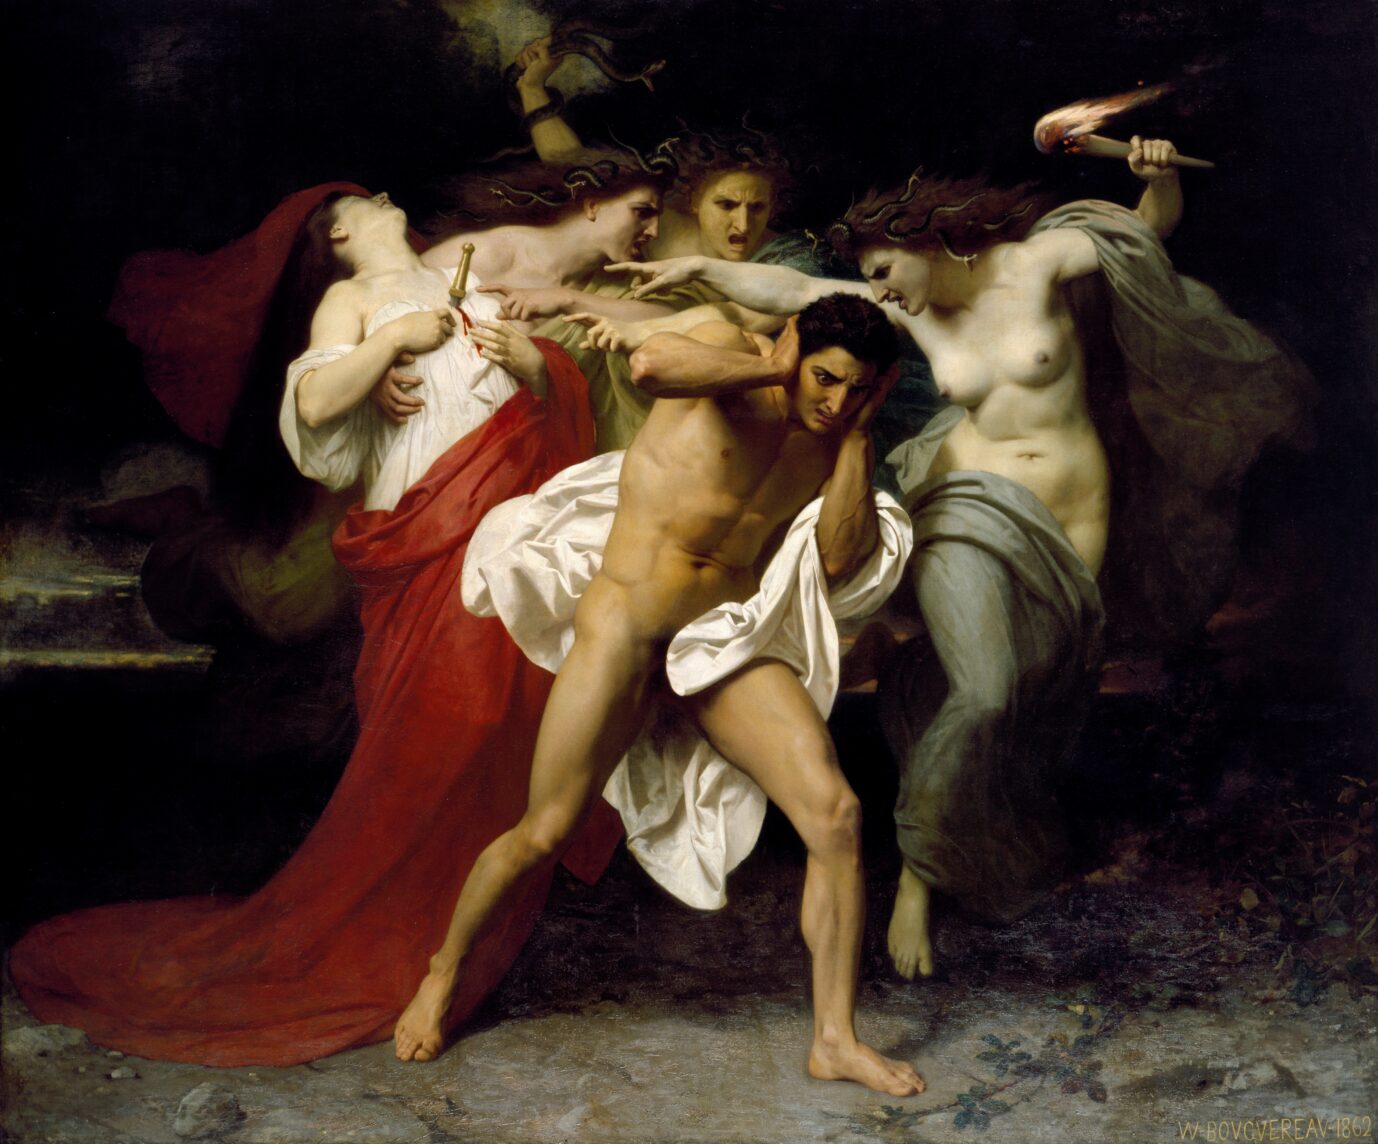 Das Beitragsbild ist ein Gemälde William Adolphe Bouguereau namens "Orestes und die Erinnyen". Als Rachegöttinnen symbolisieren sie hier die Skrupellosigkeit der Woken. (Symbolbild)